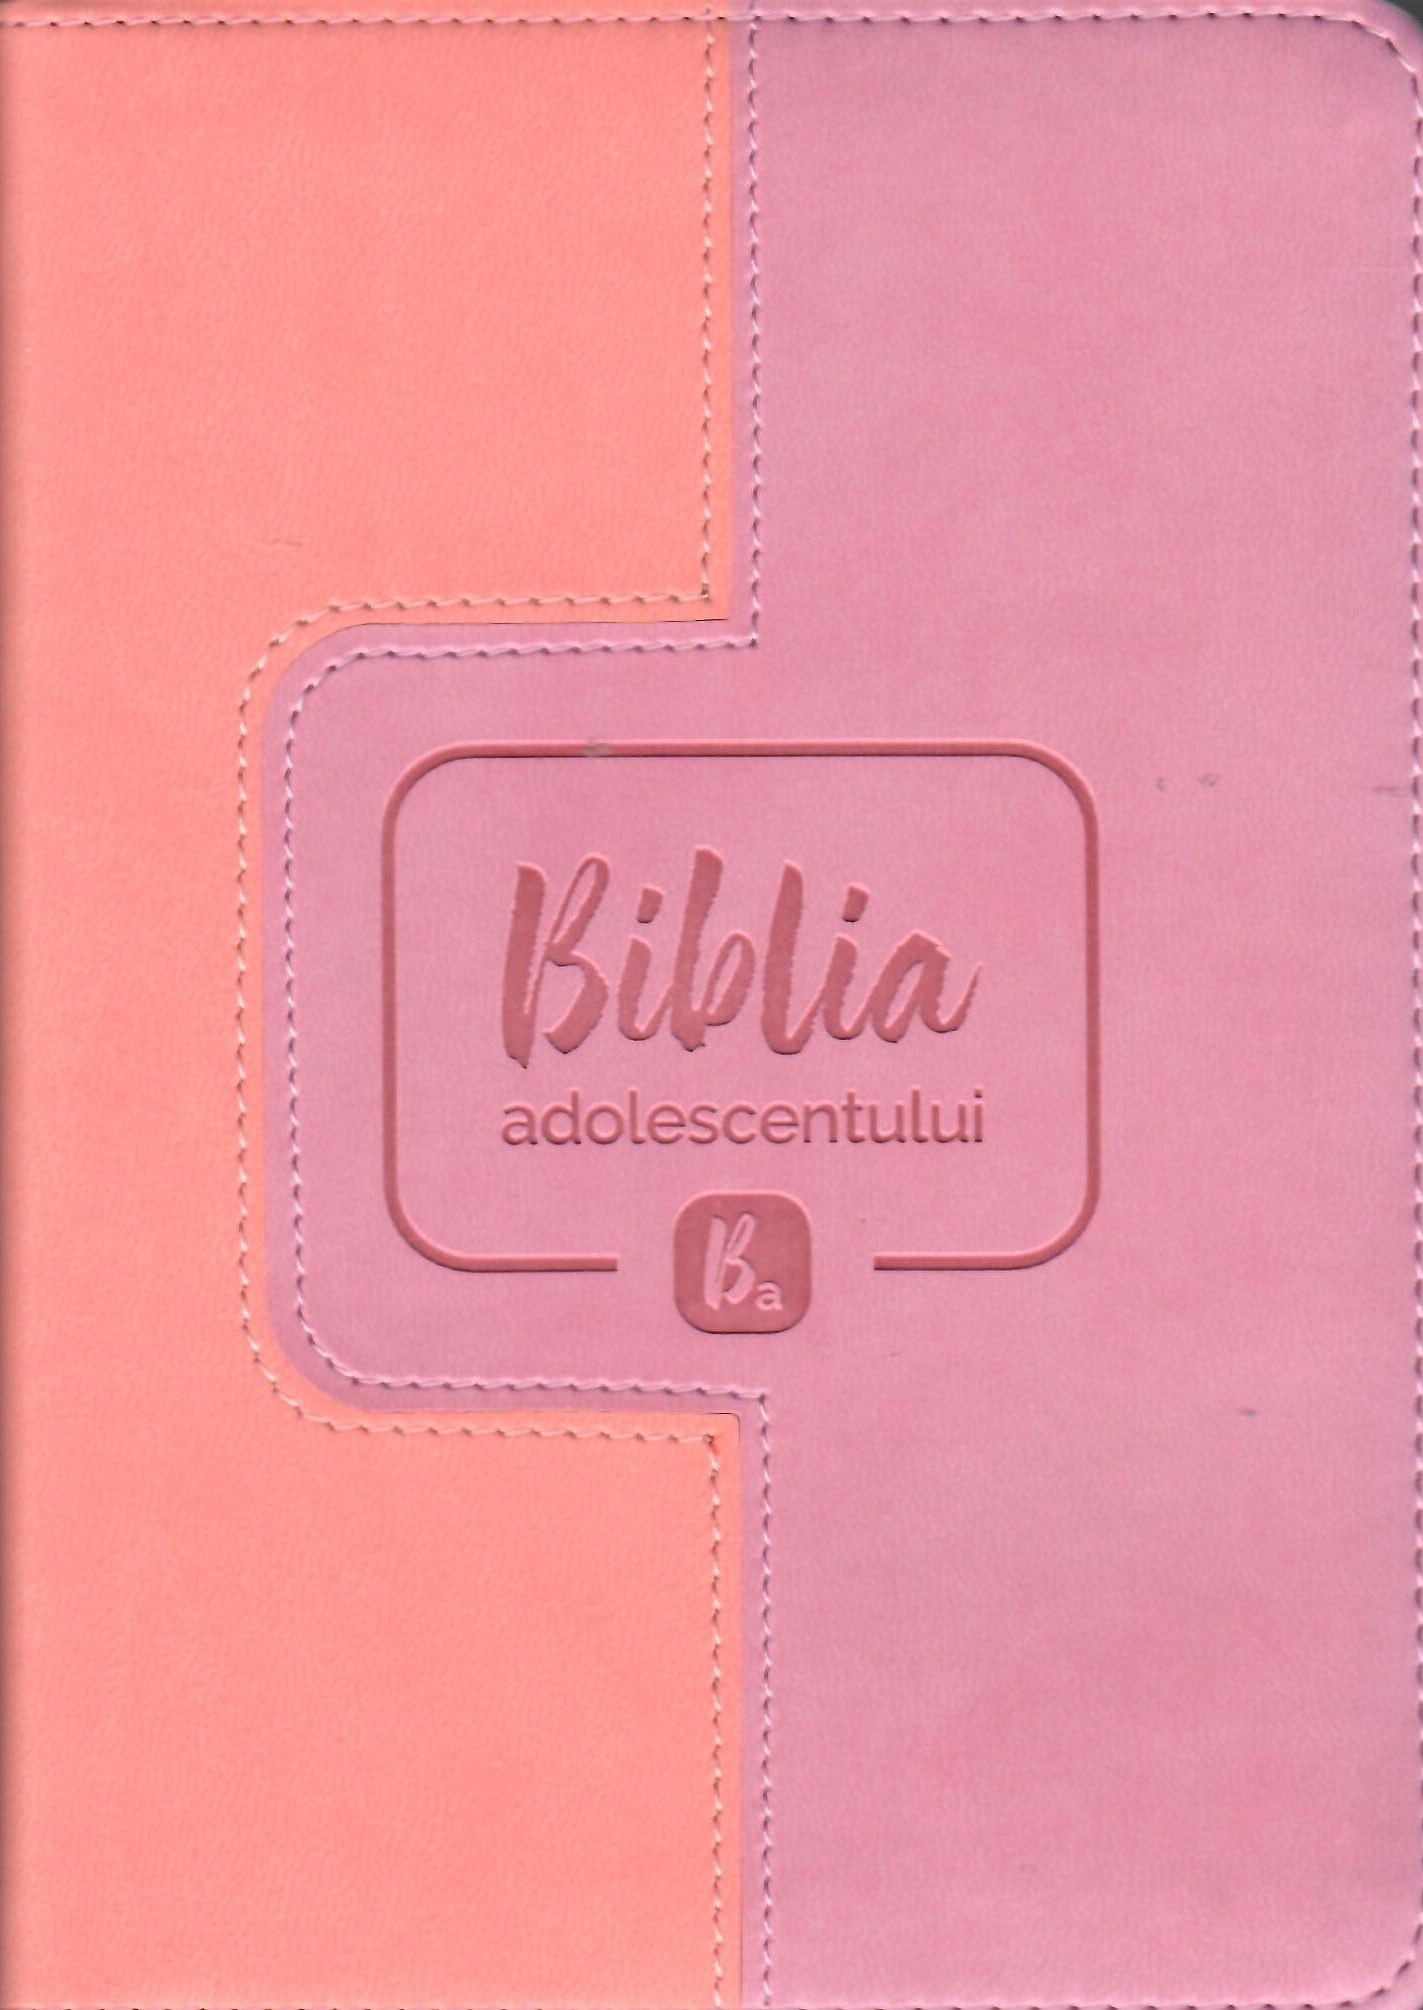 Biblia adolescentului - copertă roz